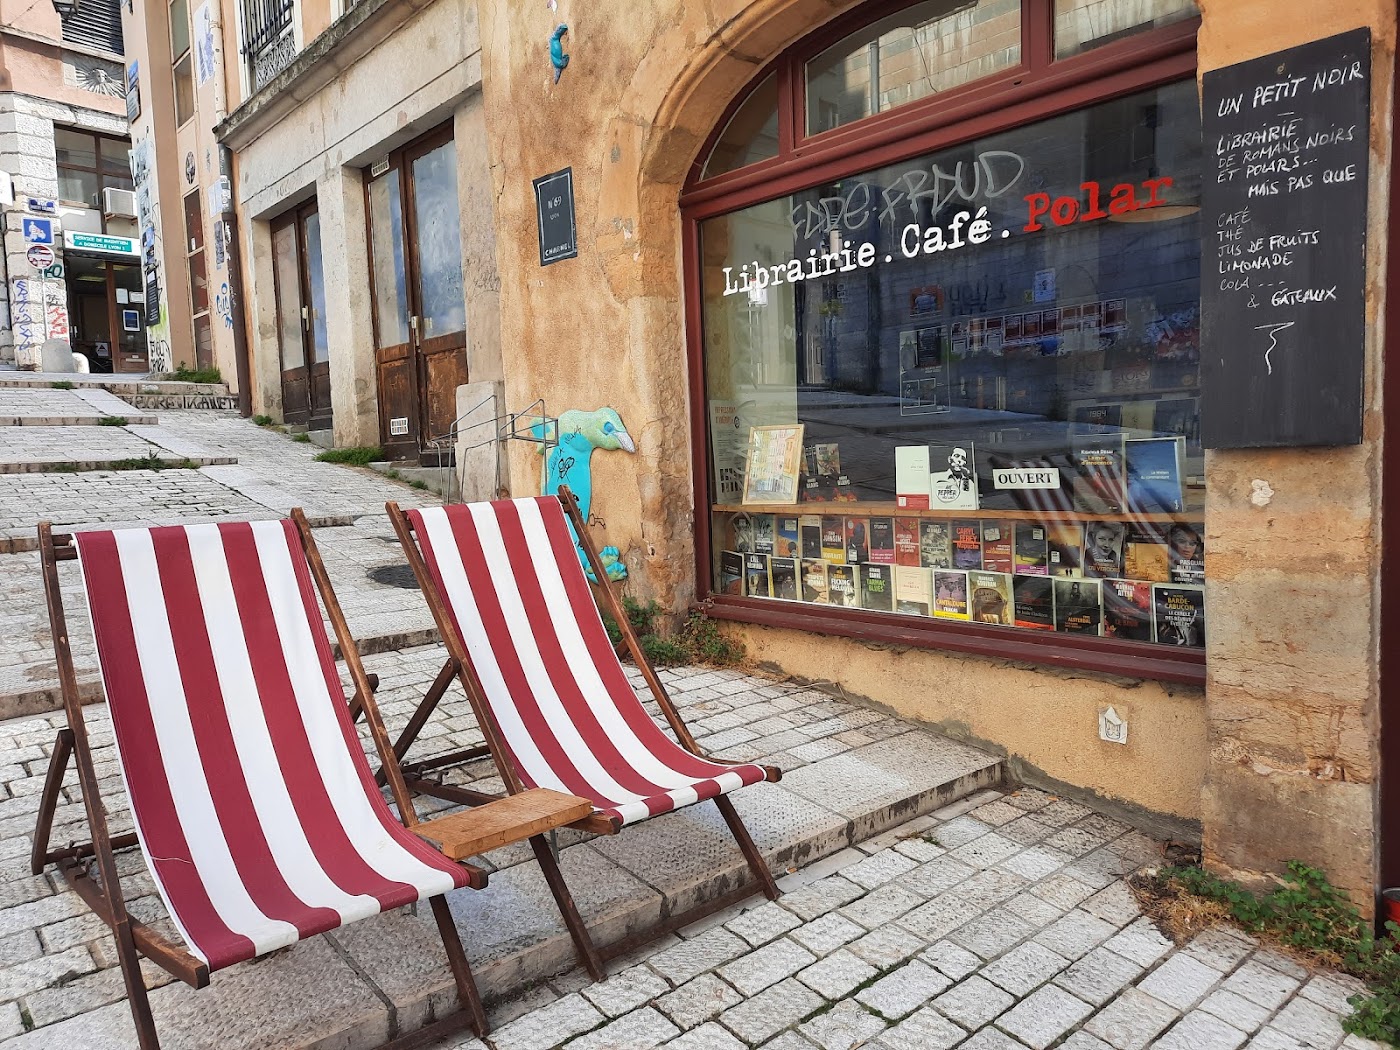 Librairie-Café Un Petit Noir